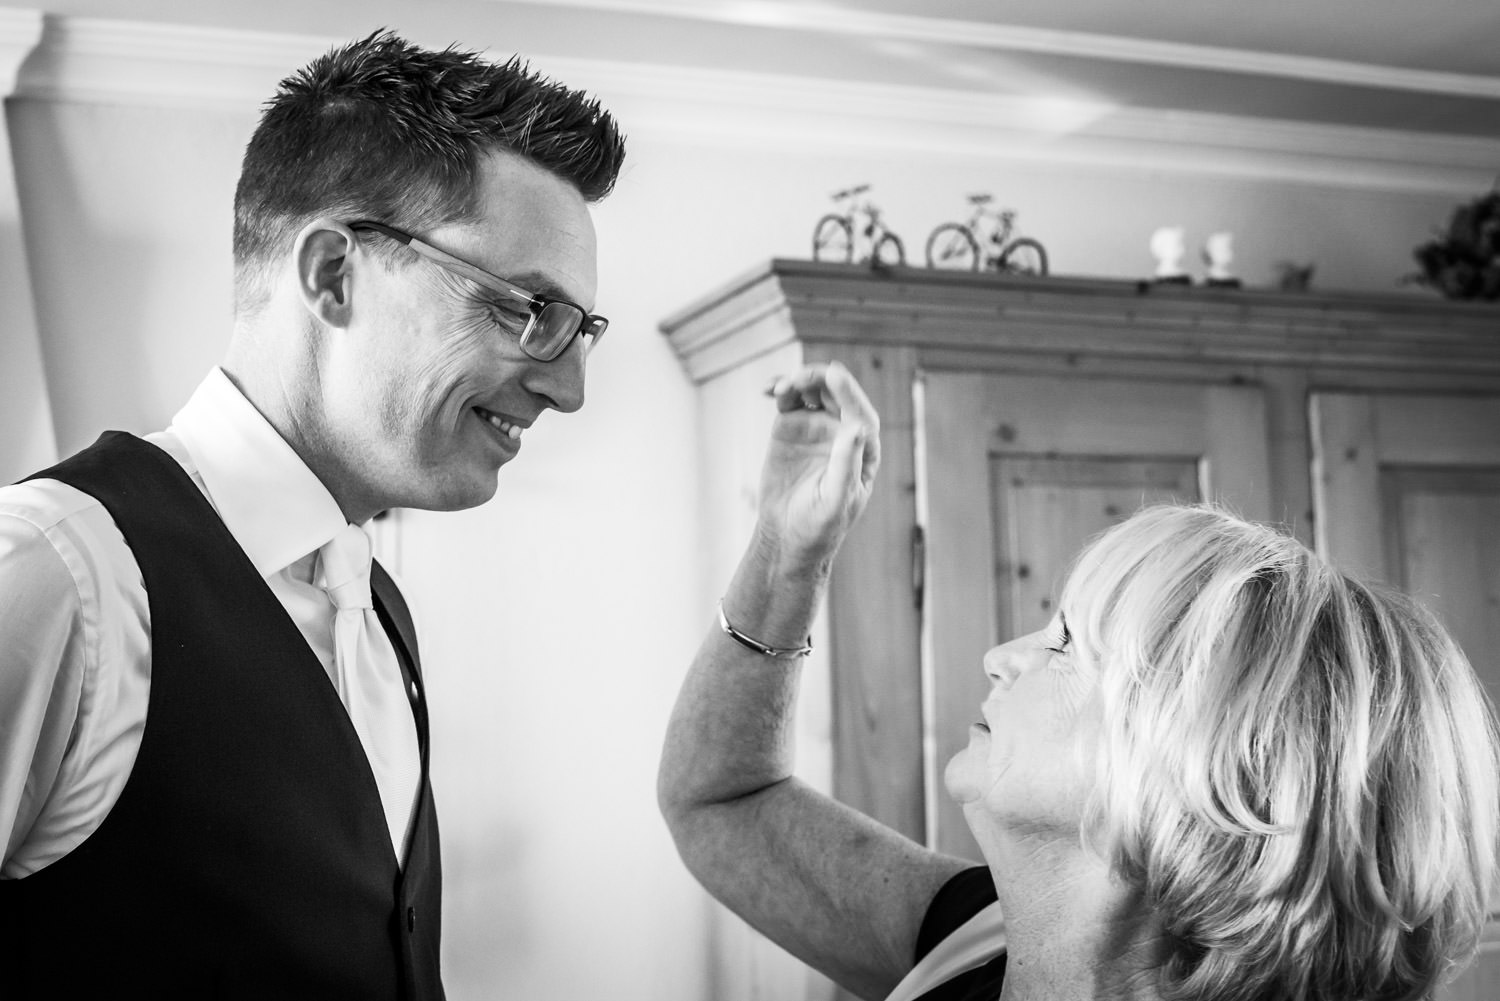 Trouwfotograaf legt vast dat moder het haar van de bruidegom aan